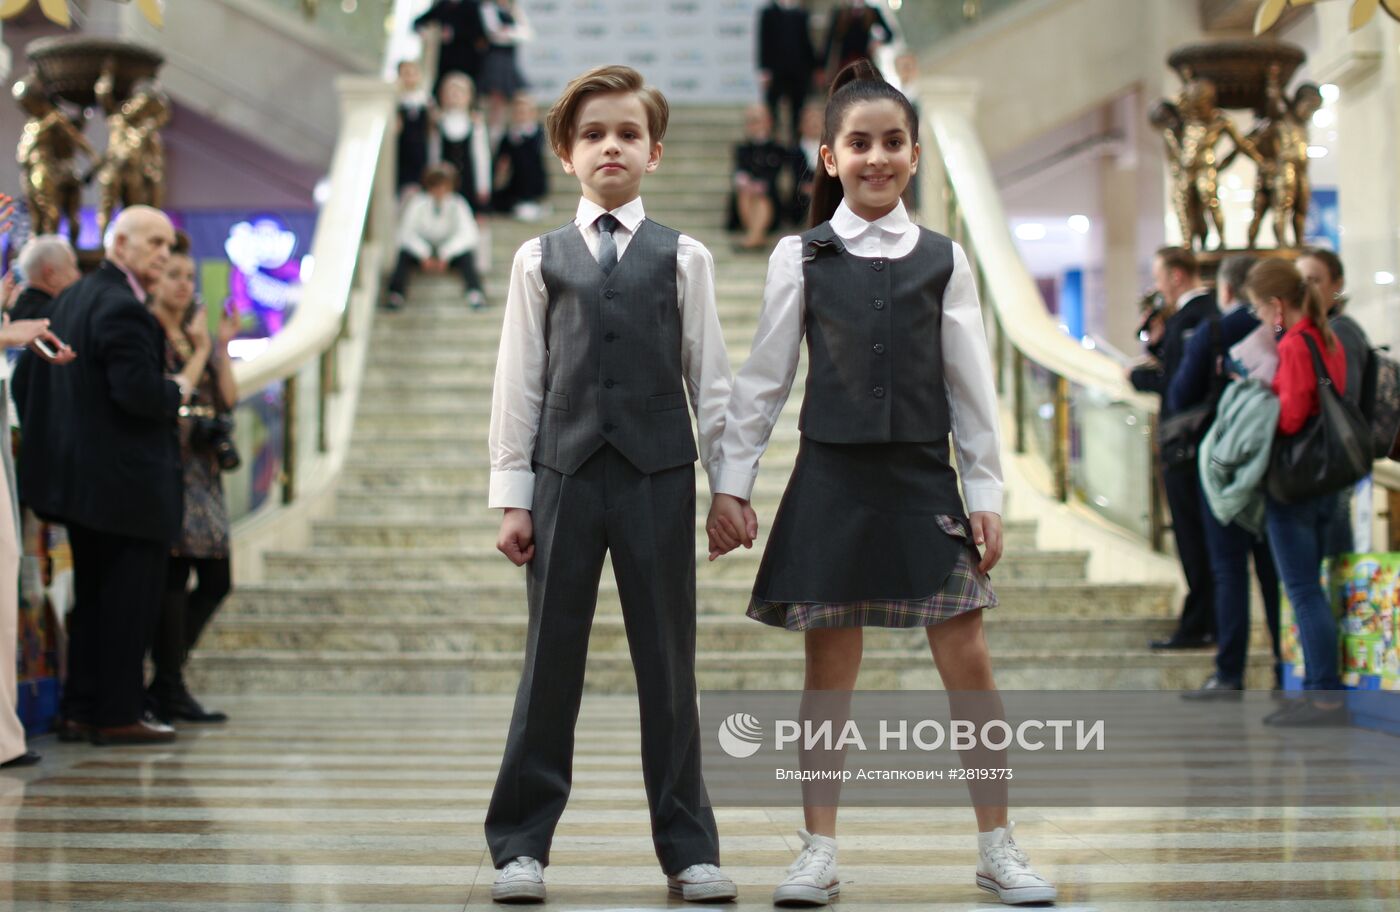 Открытие выставки московских производителей школьной формы в главном атриуме магазина "Детский мир"